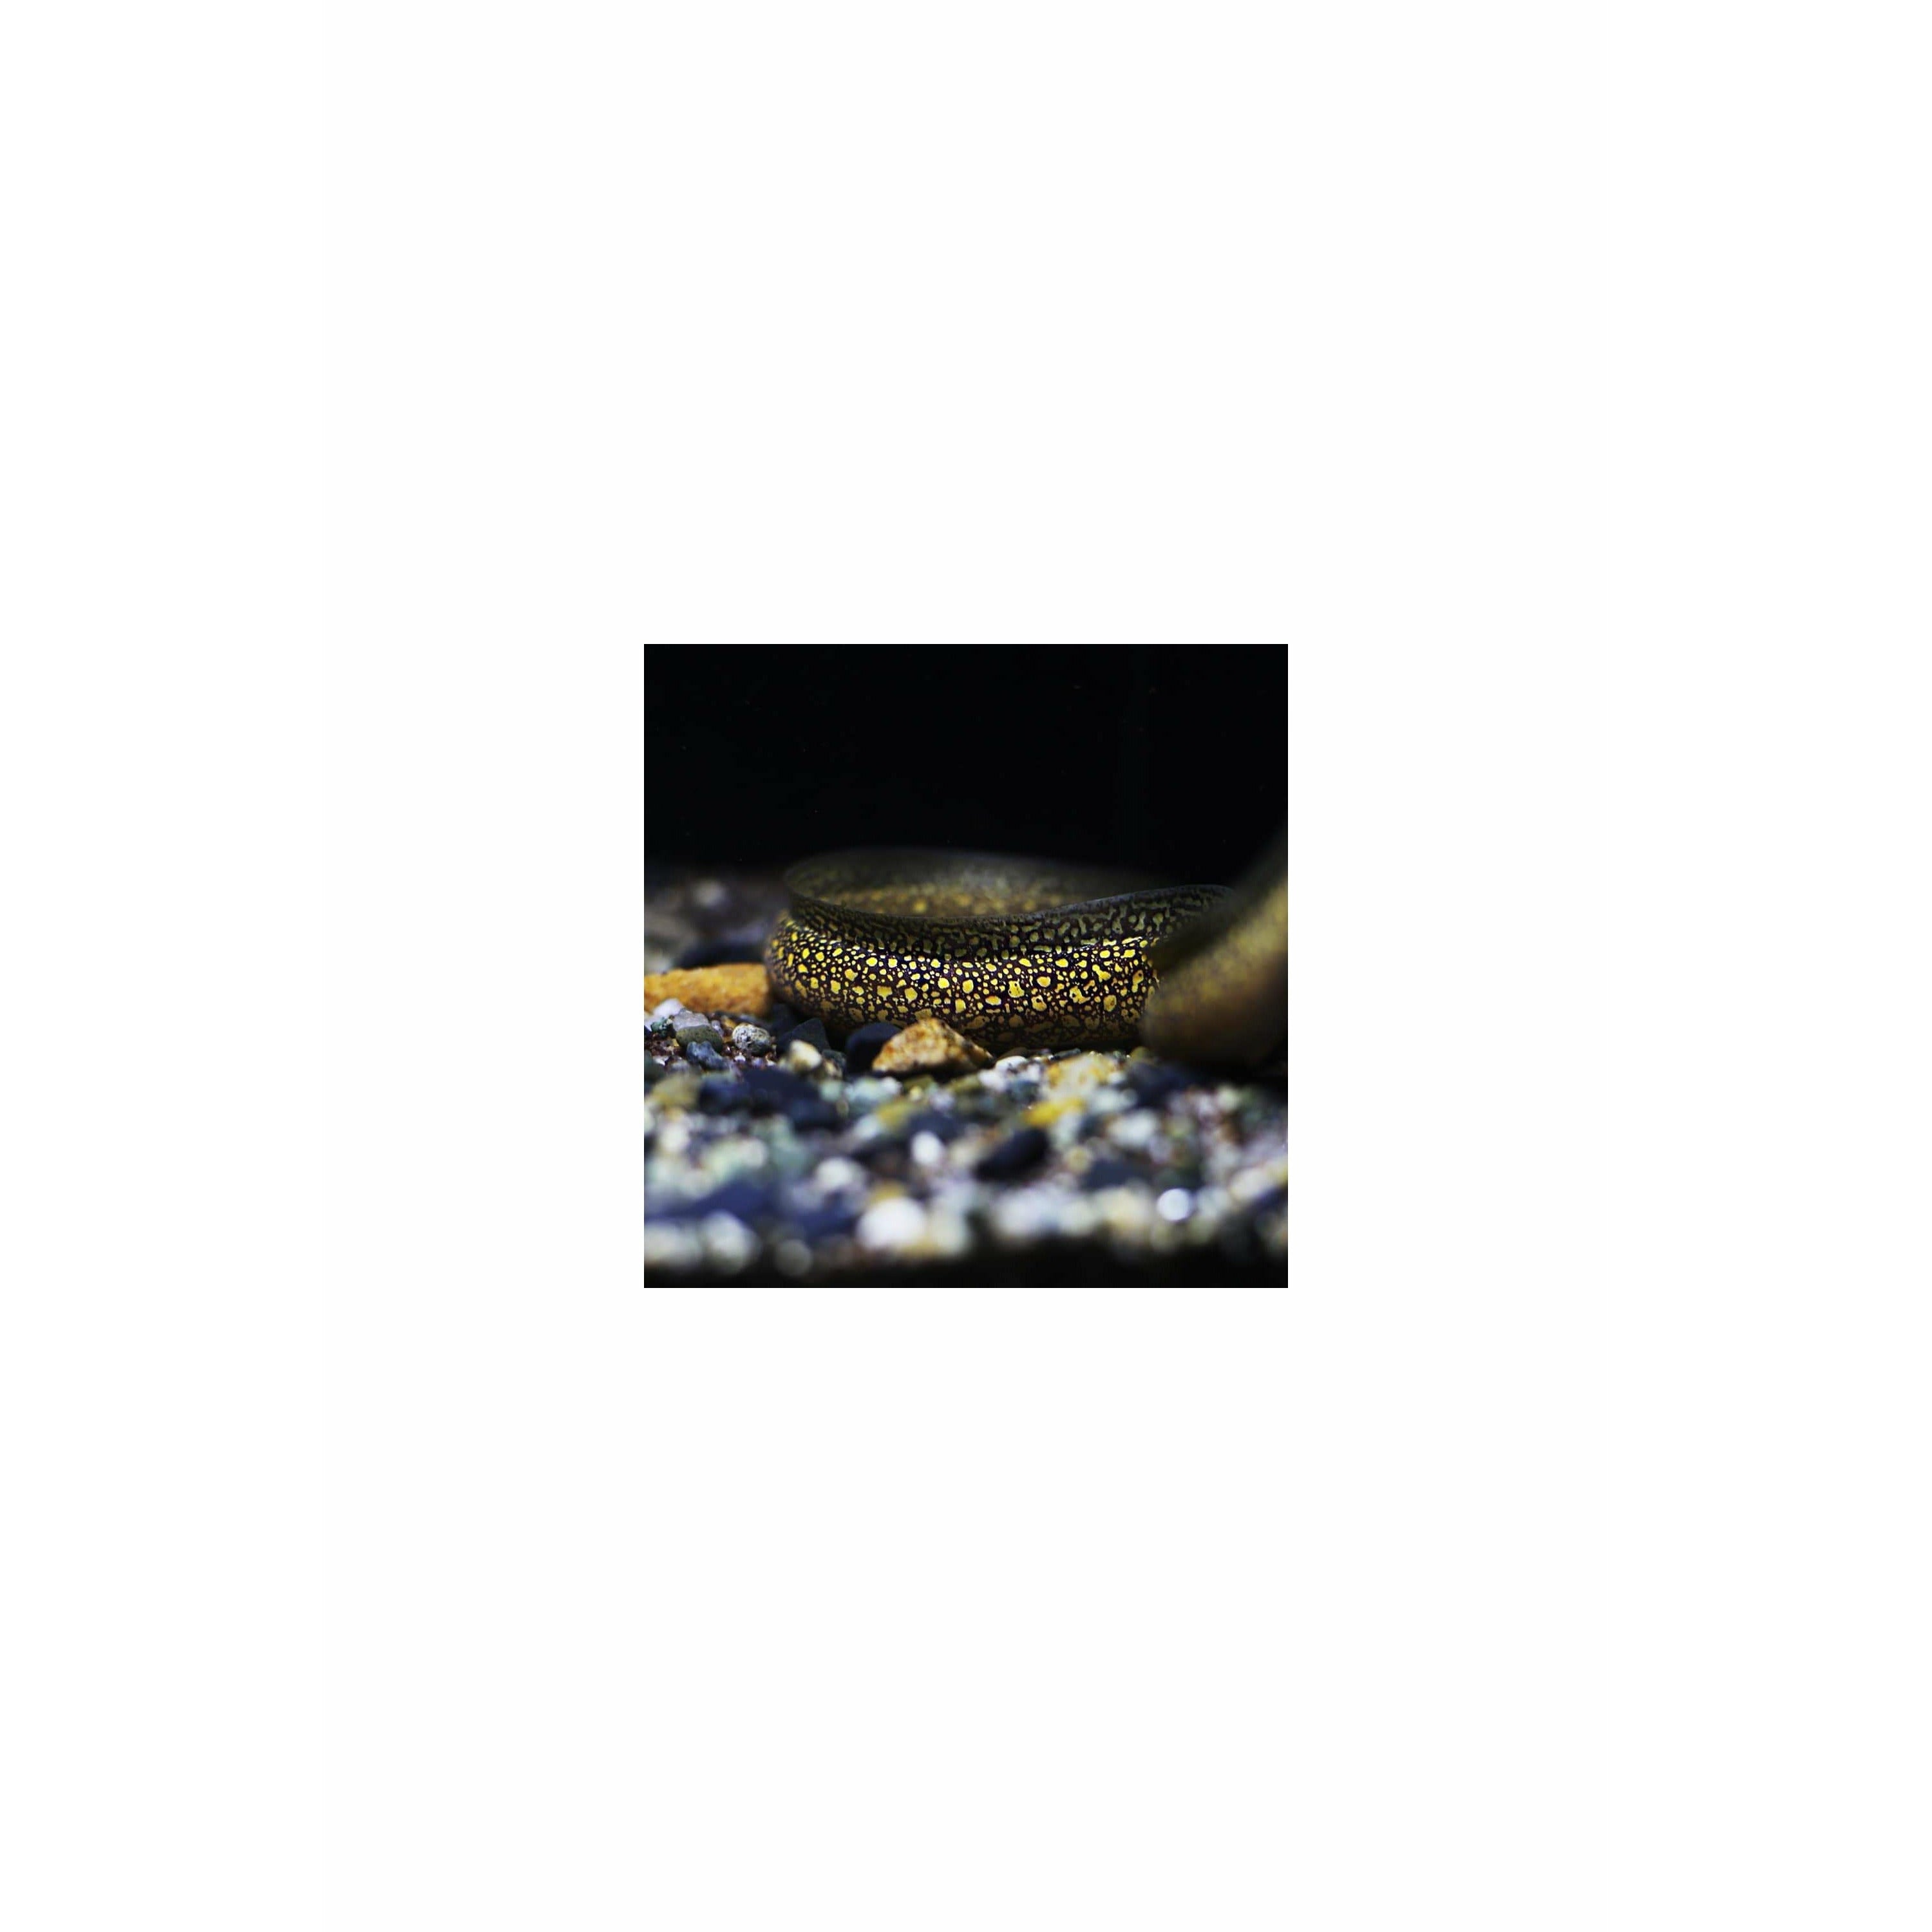 Gymnothorax tile, 'Freshwater' Moray Eel